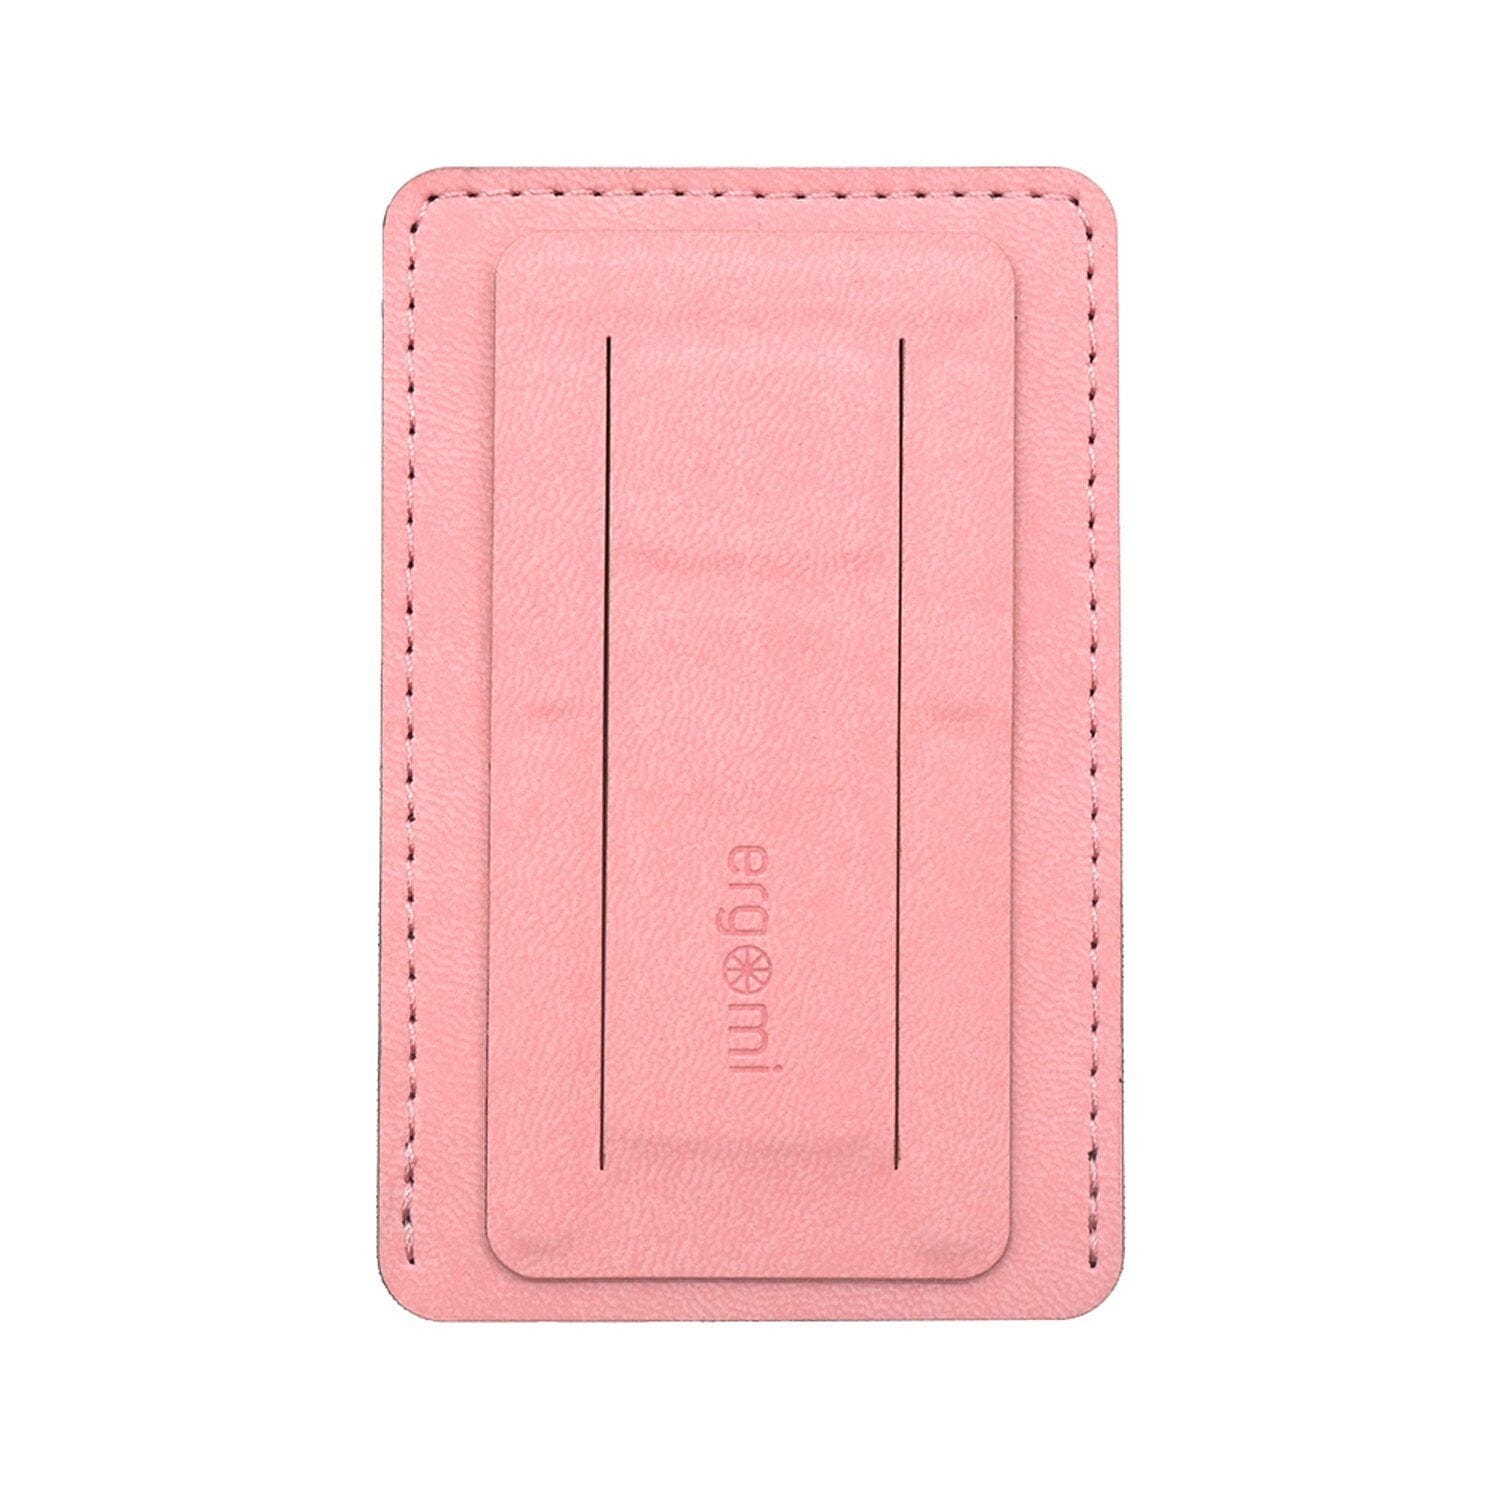 Ergomi Hercules Wallet Adhesive Cardholder Phone Stand Phone Stand Ergomi Pink 